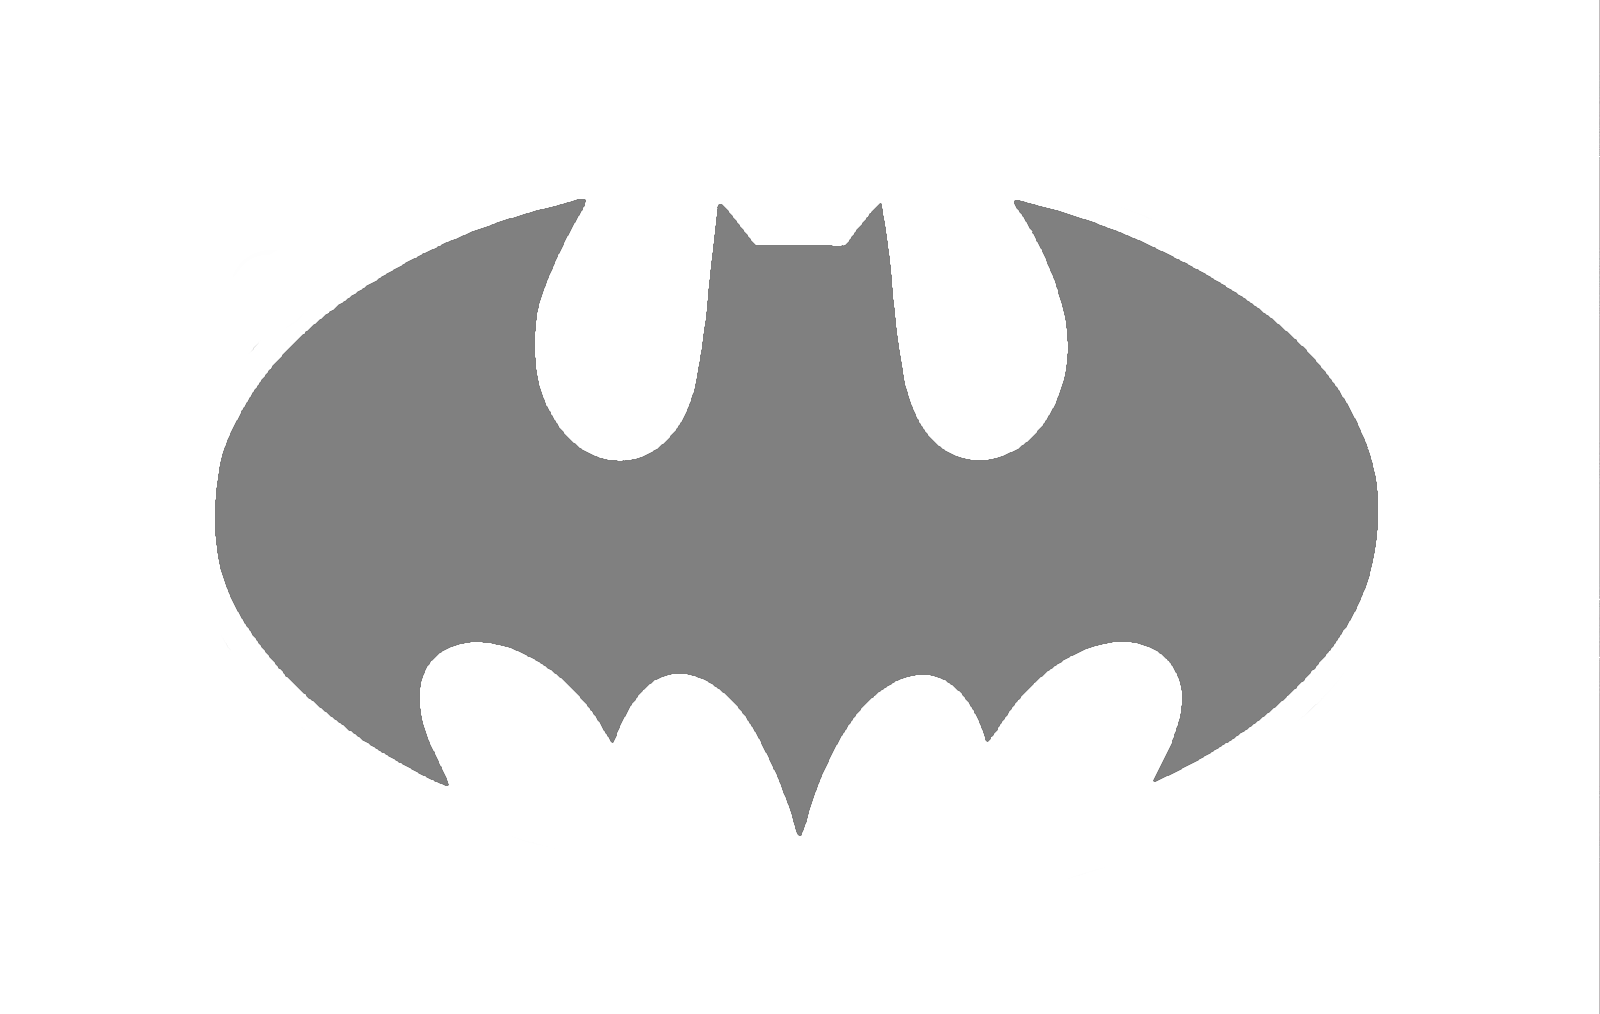 Hágalo usted mismo Proyecto de Arte Pintura Plantilla Reutilizable Silueta  - Símbolo de Murciélago Original de Batman | eBay